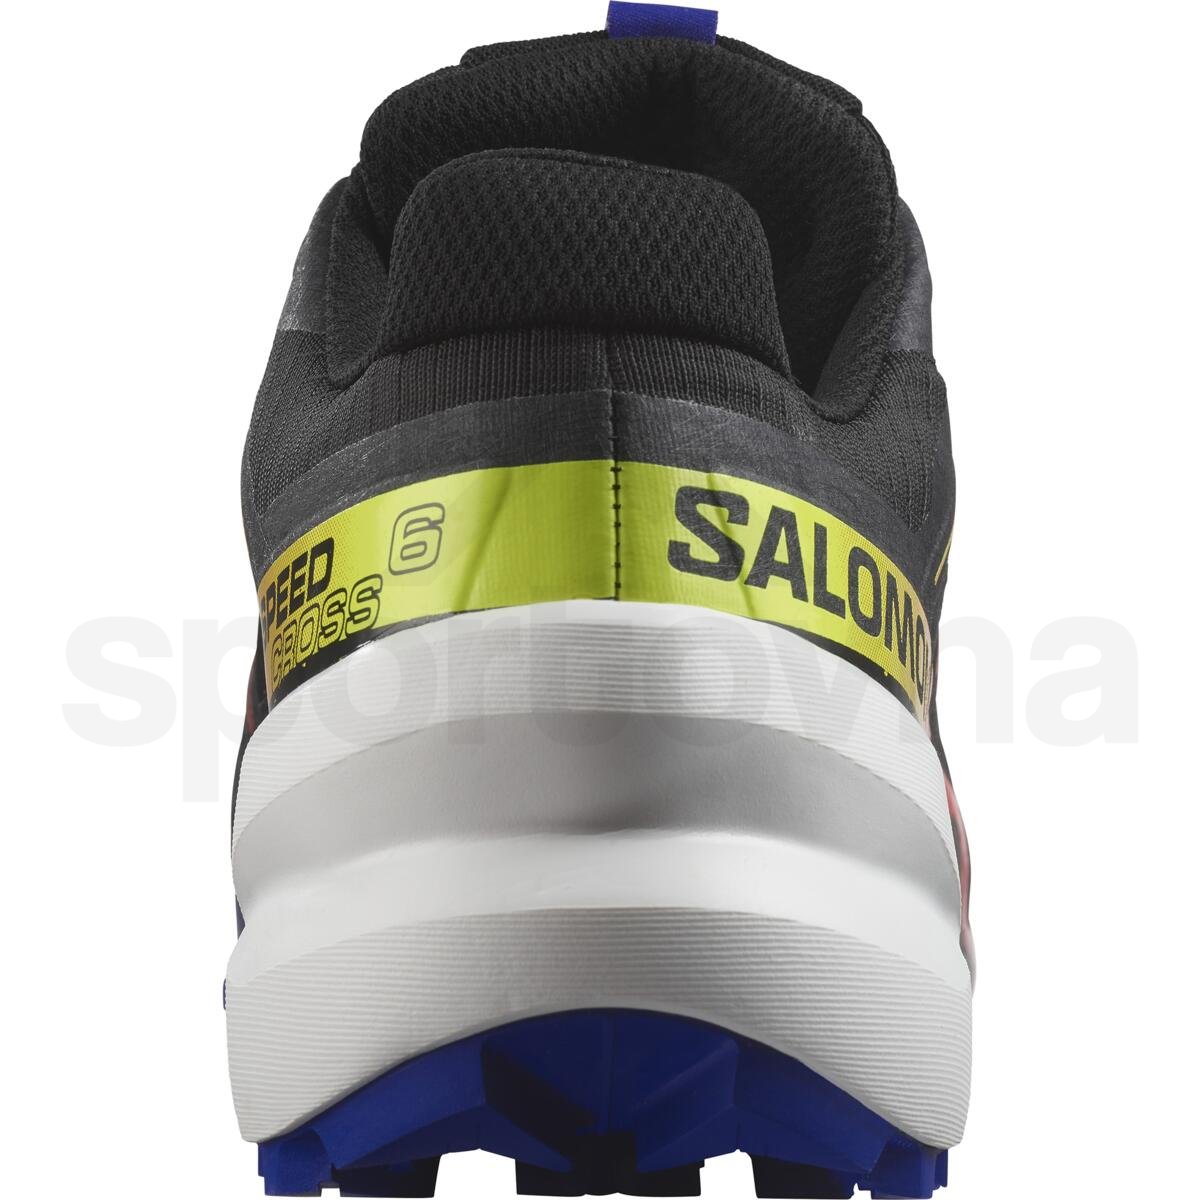 Obuv Salomon Speedcross 6 GTX - černá/modrá